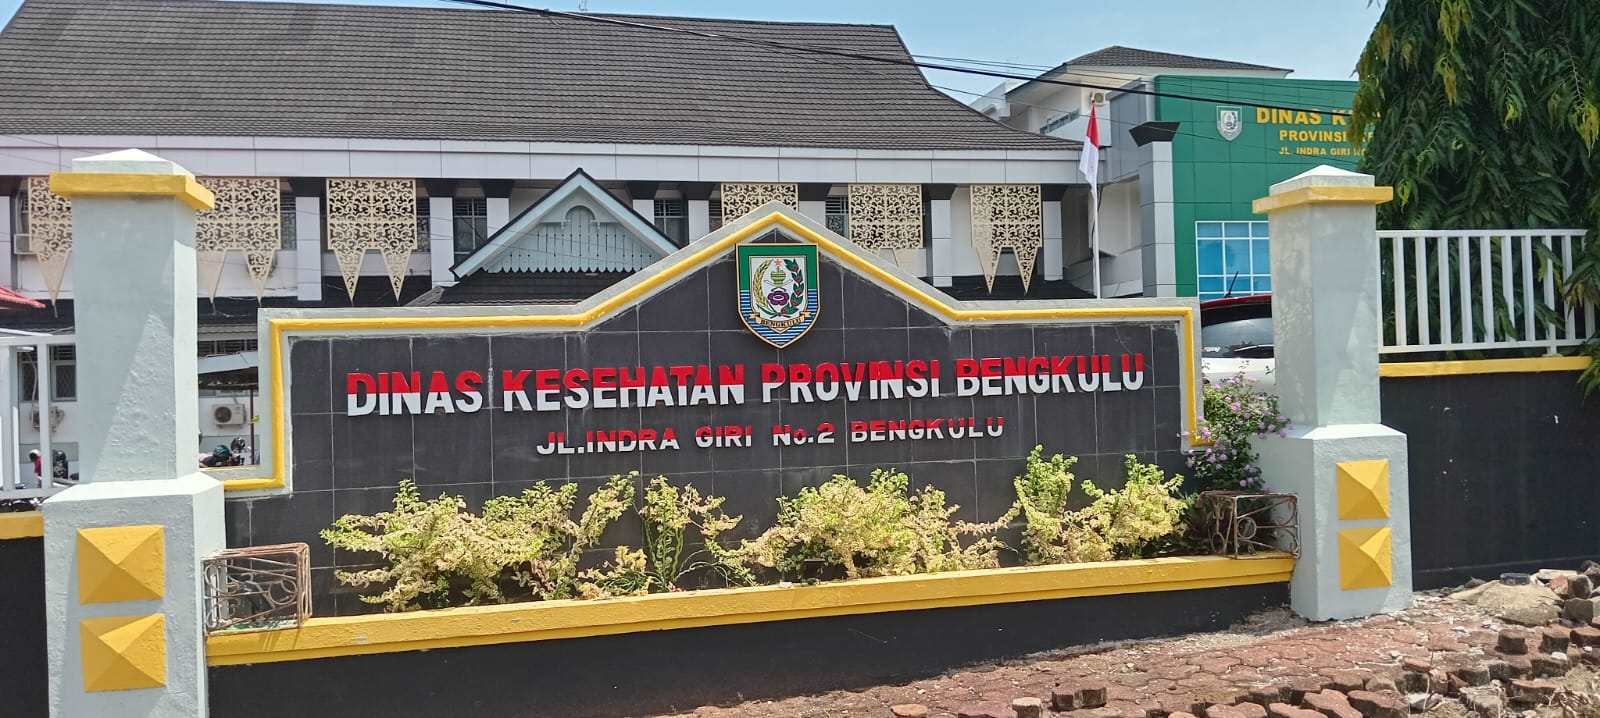 Kasus DBD di Provinsi Bengkulu Turun 75 Persen dalam Dua Minggu Terakhir